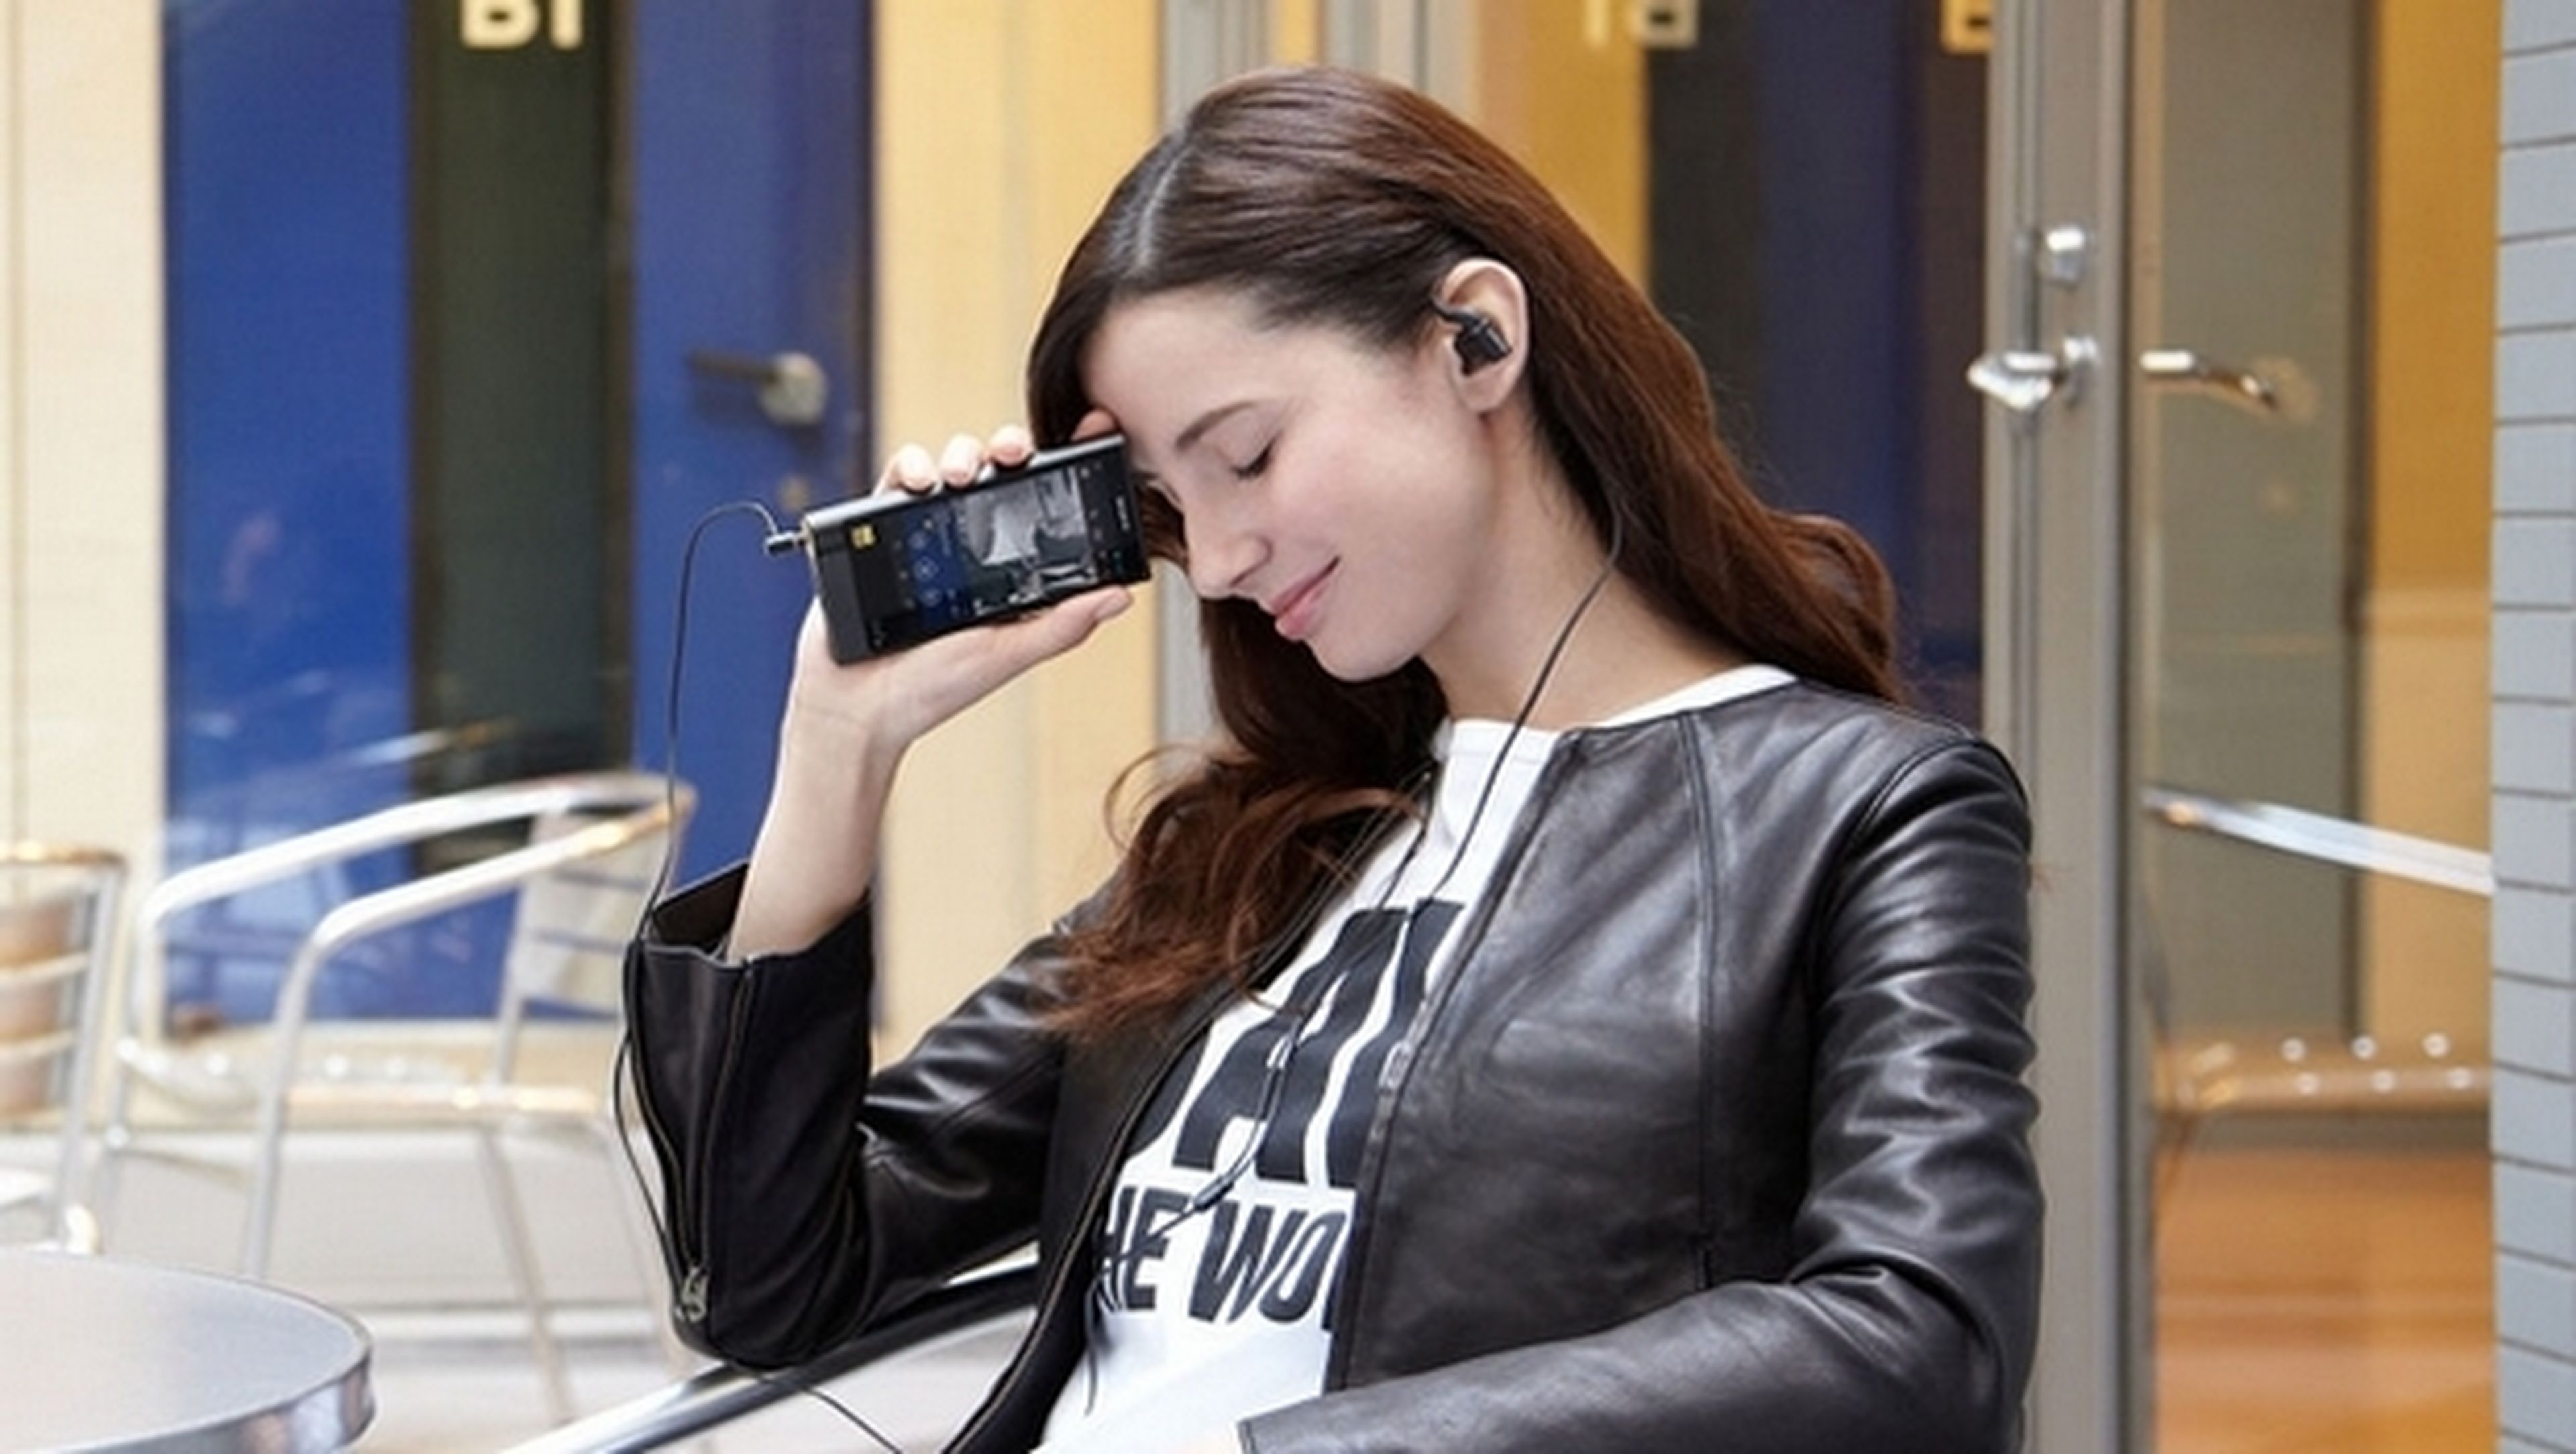 Vuelve el Walkman de Sony: conoce los nuevos reproductores MP3